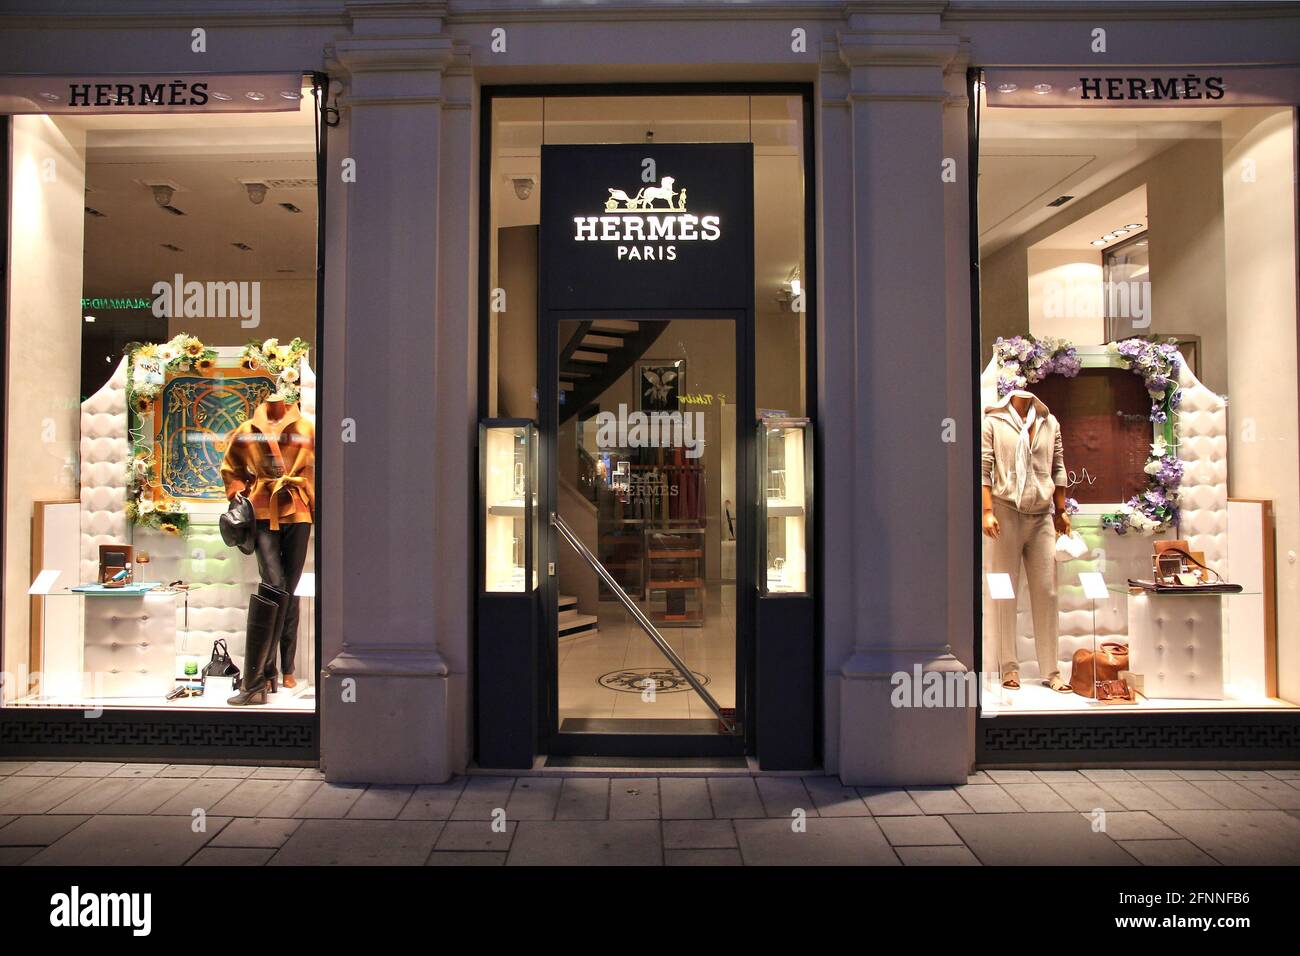 WIEN, ÖSTERREICH - 4. SEPTEMBER 2011: Hermes Store in Wien. Hermes wurde  1837 gegründet und erzielte 2.4 einen Umsatz von 2010 Milliarden Euro  Stockfotografie - Alamy